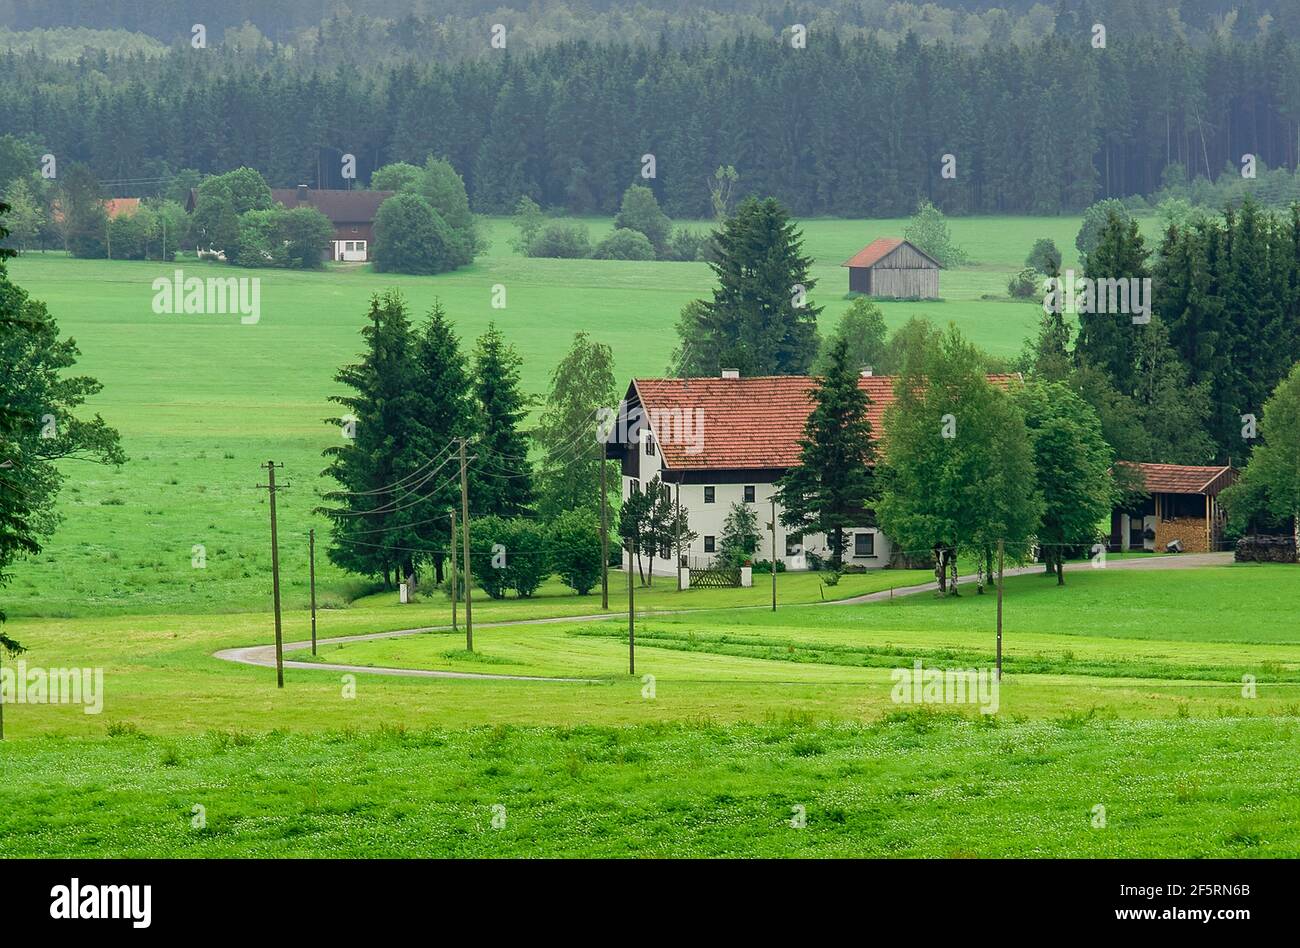 Bayerische Bauernhöfe im Wald, umgeben von grünen Weiden. Stockfoto